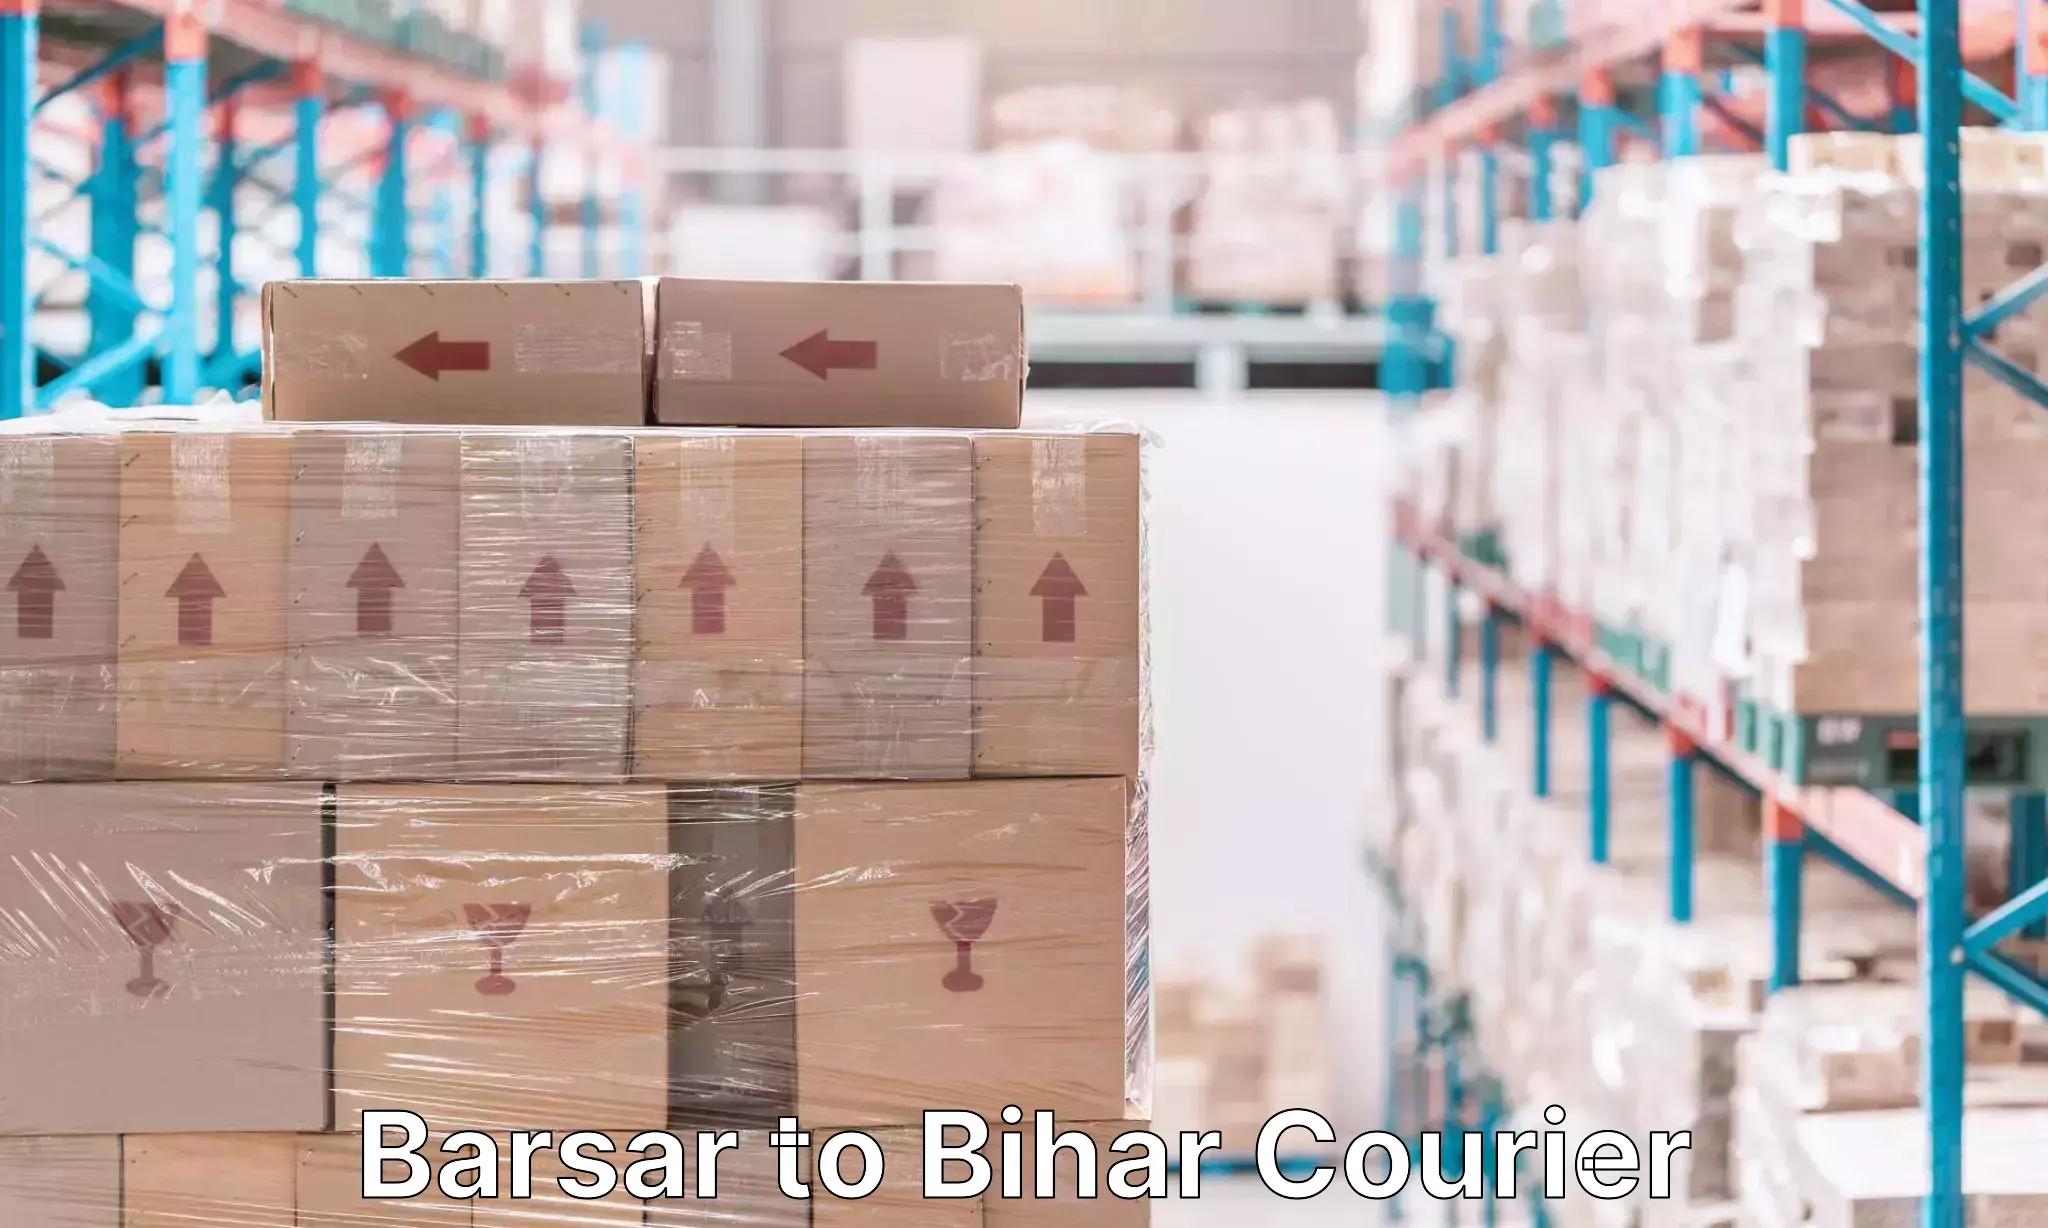 Door-to-door baggage service Barsar to Bihar